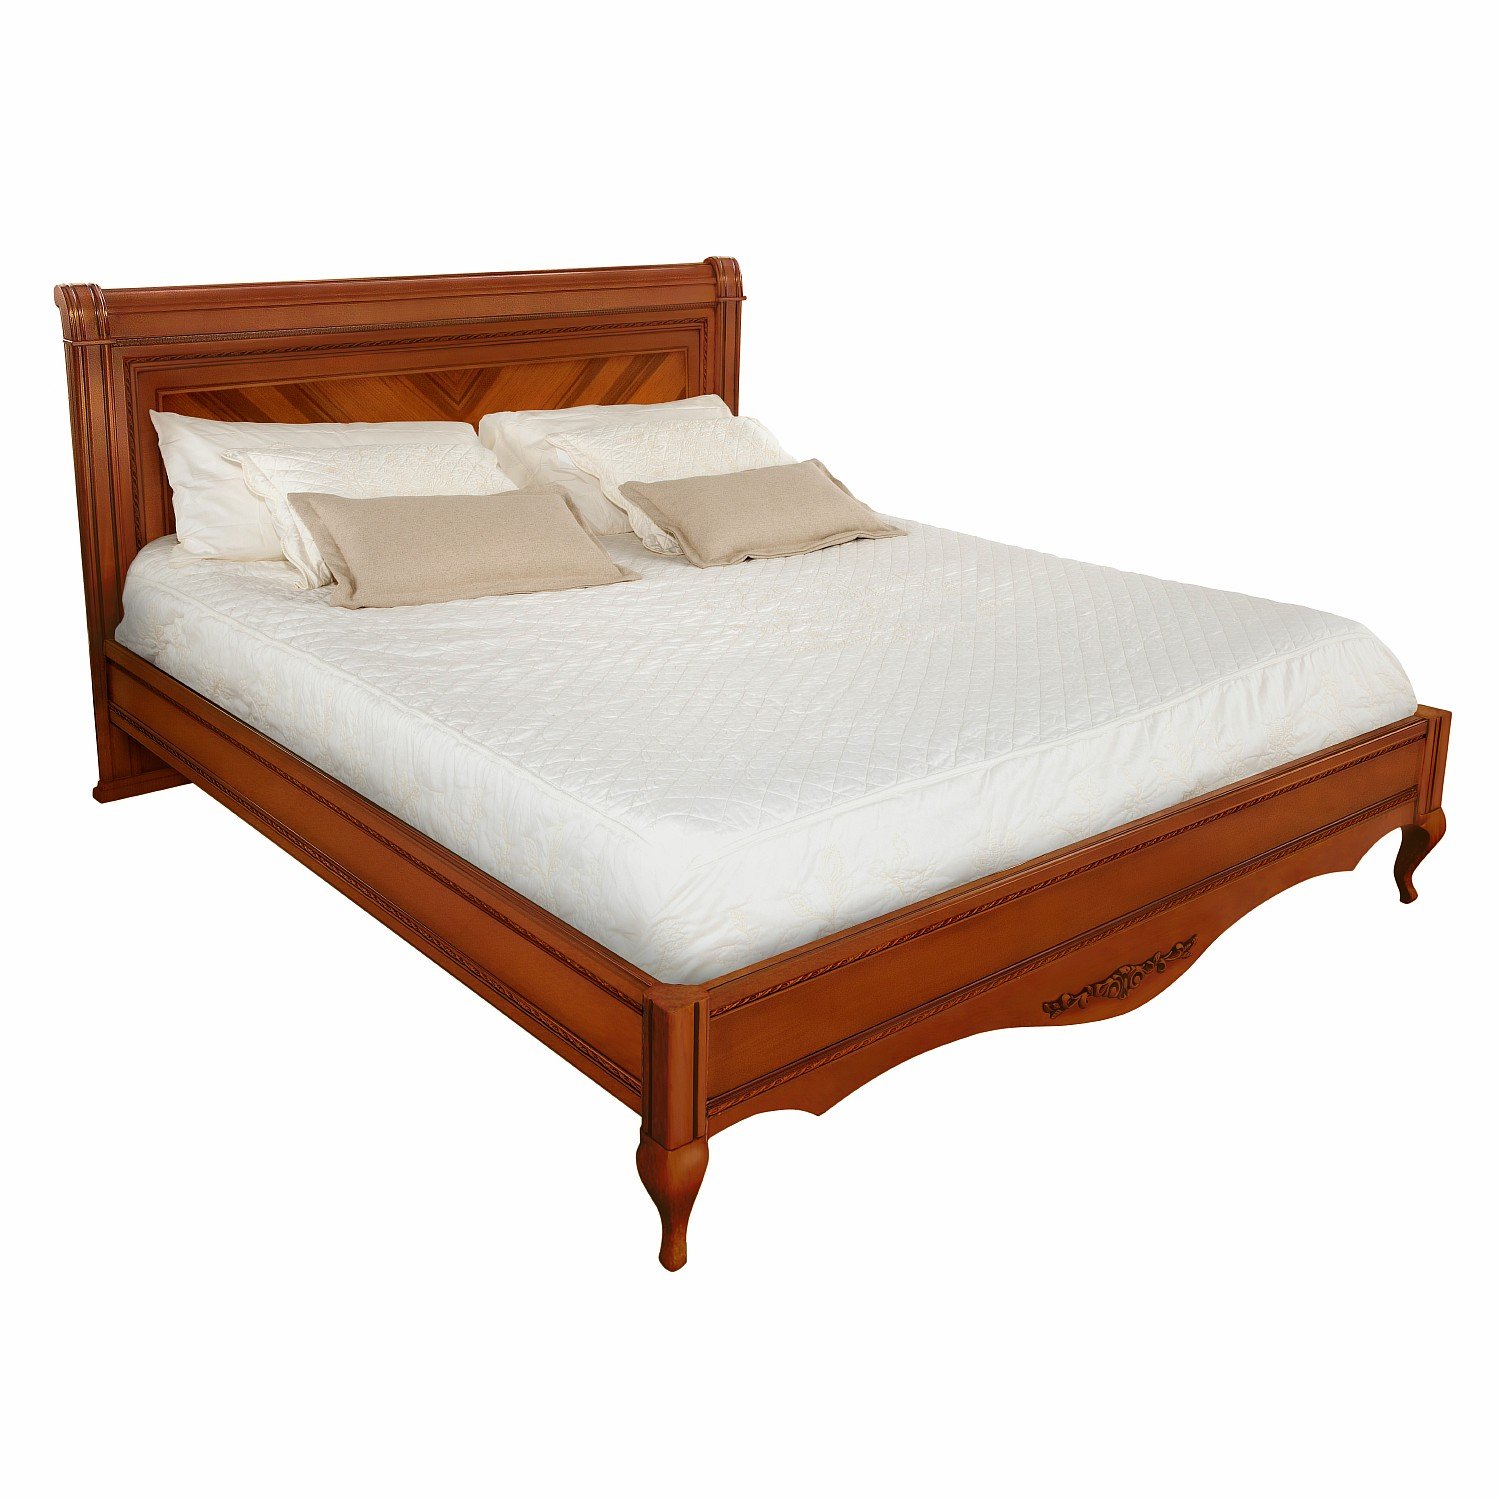 Кровать Timber Неаполь, двуспальная 180x200 см цвет: янтарь (T-538)T-538